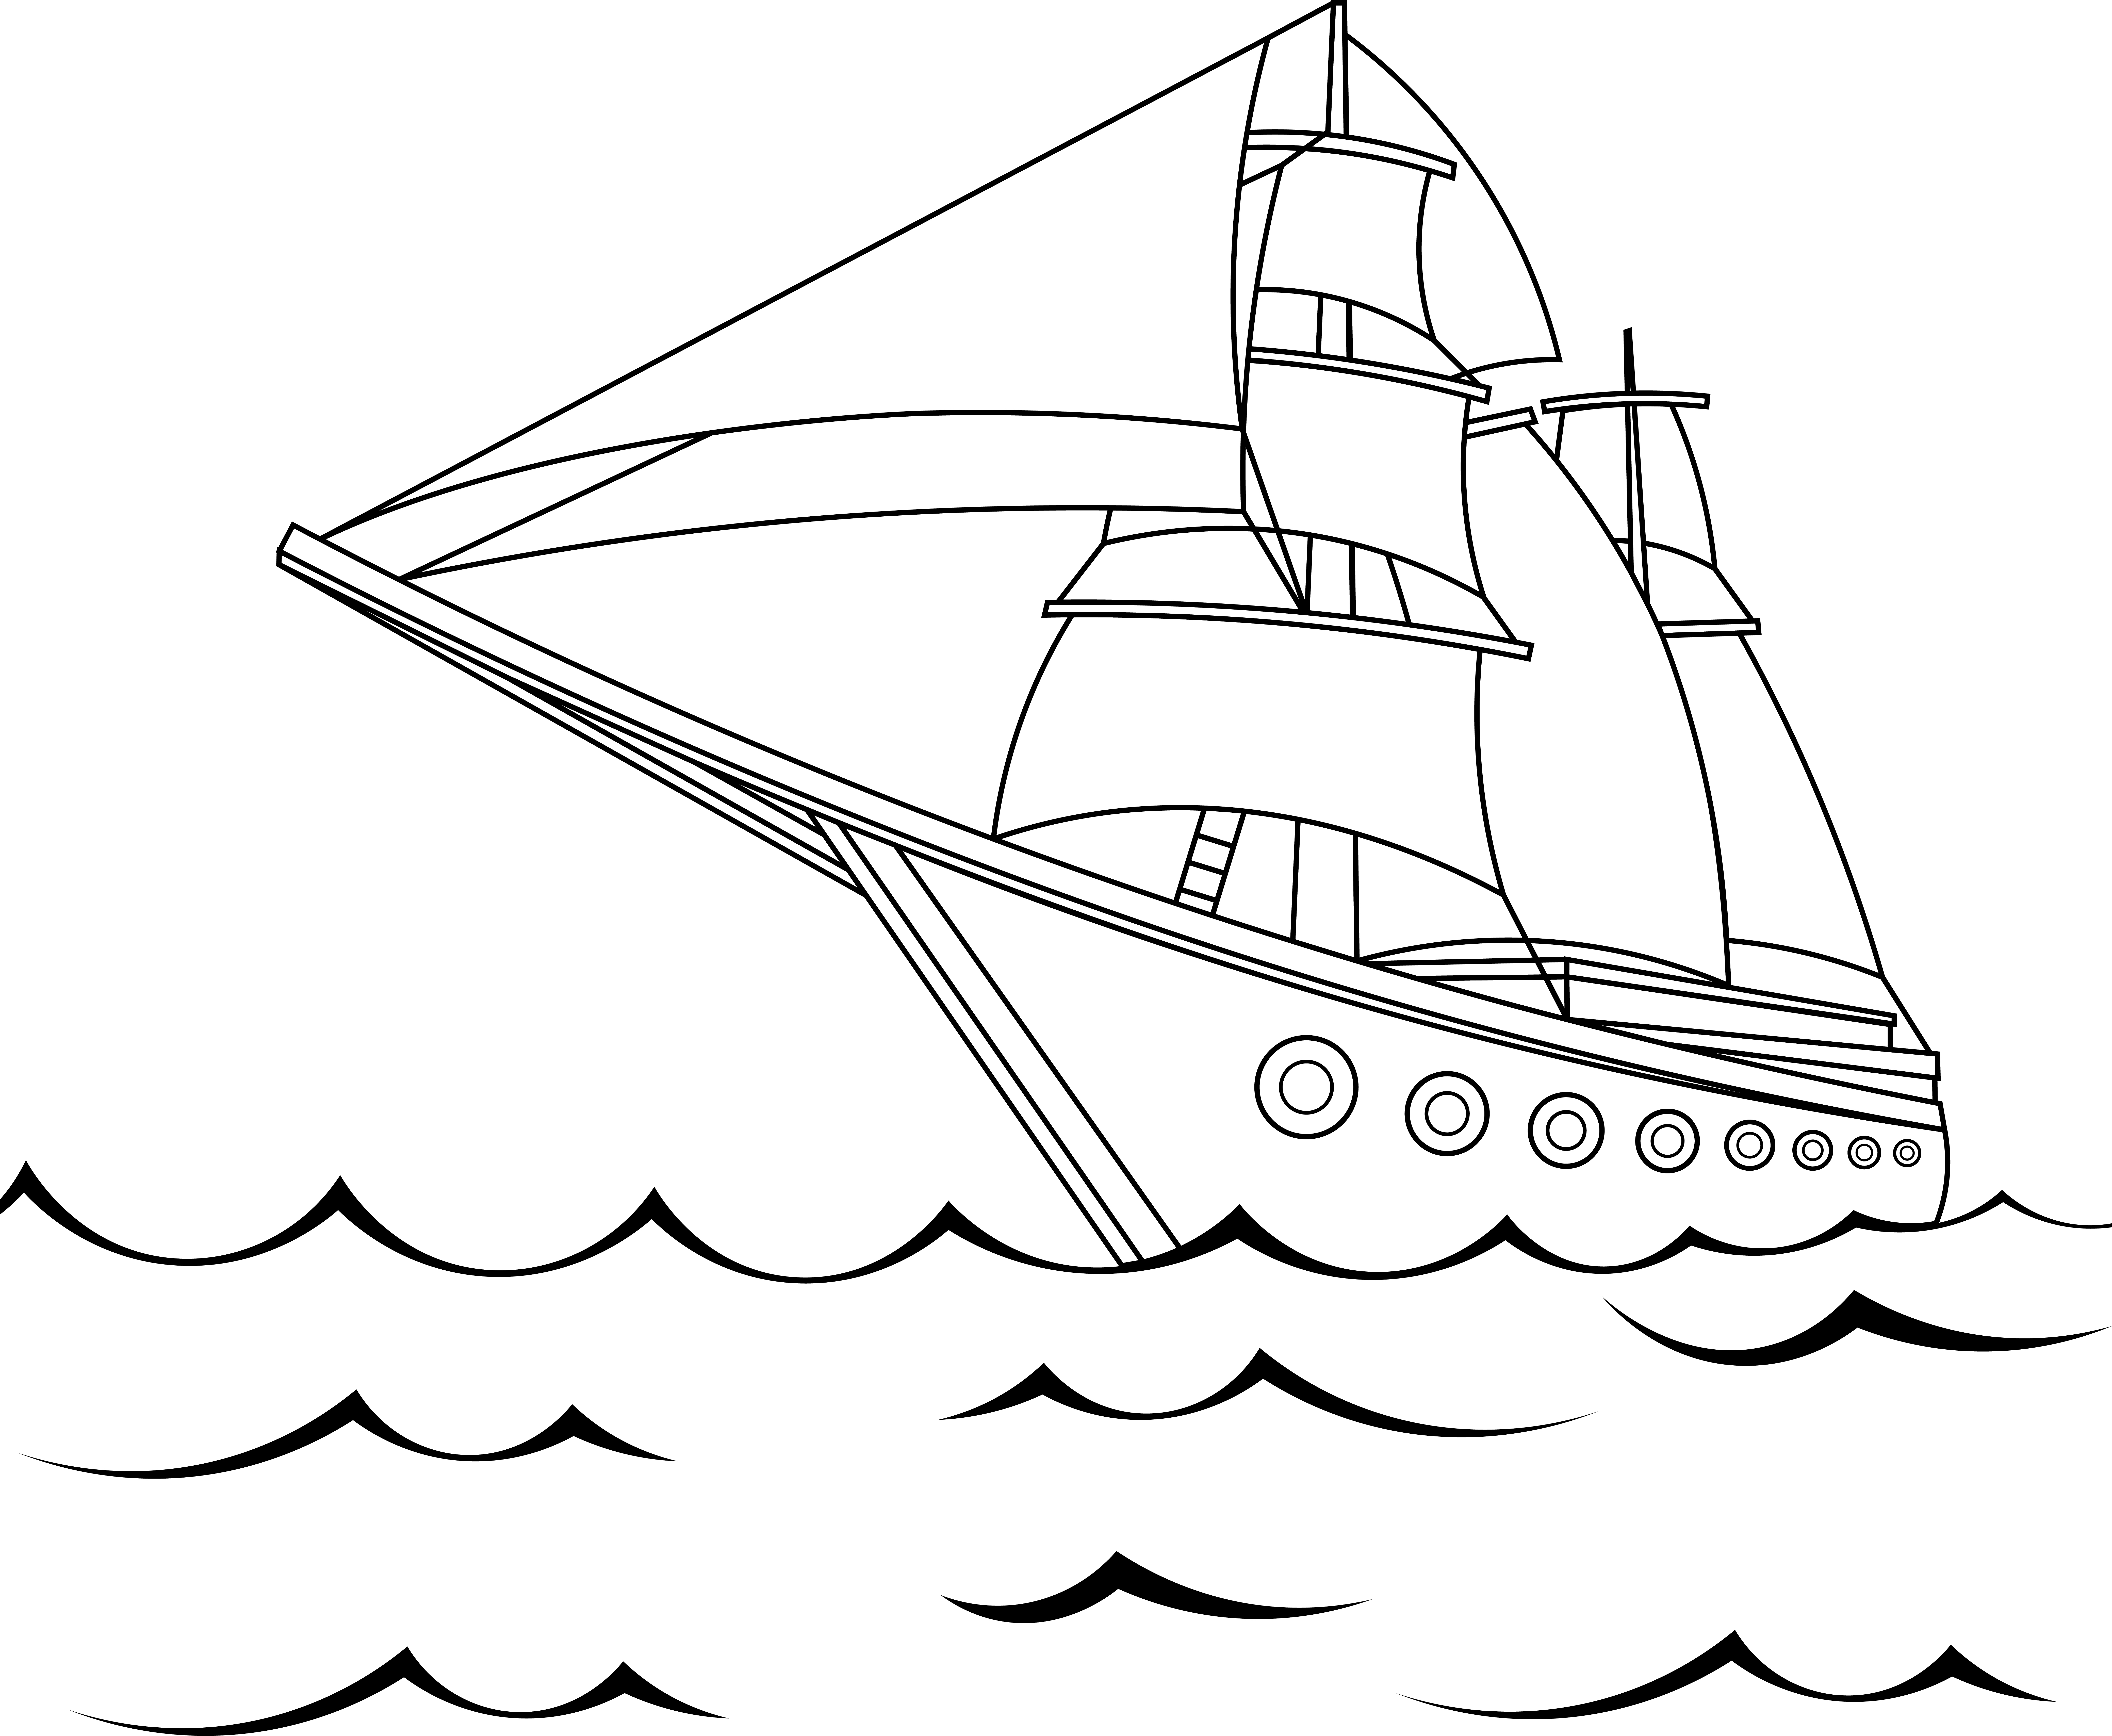 Раскраска парусный корабль «Путешествие в бескрайние горизонты» формата А4 в высоком качестве